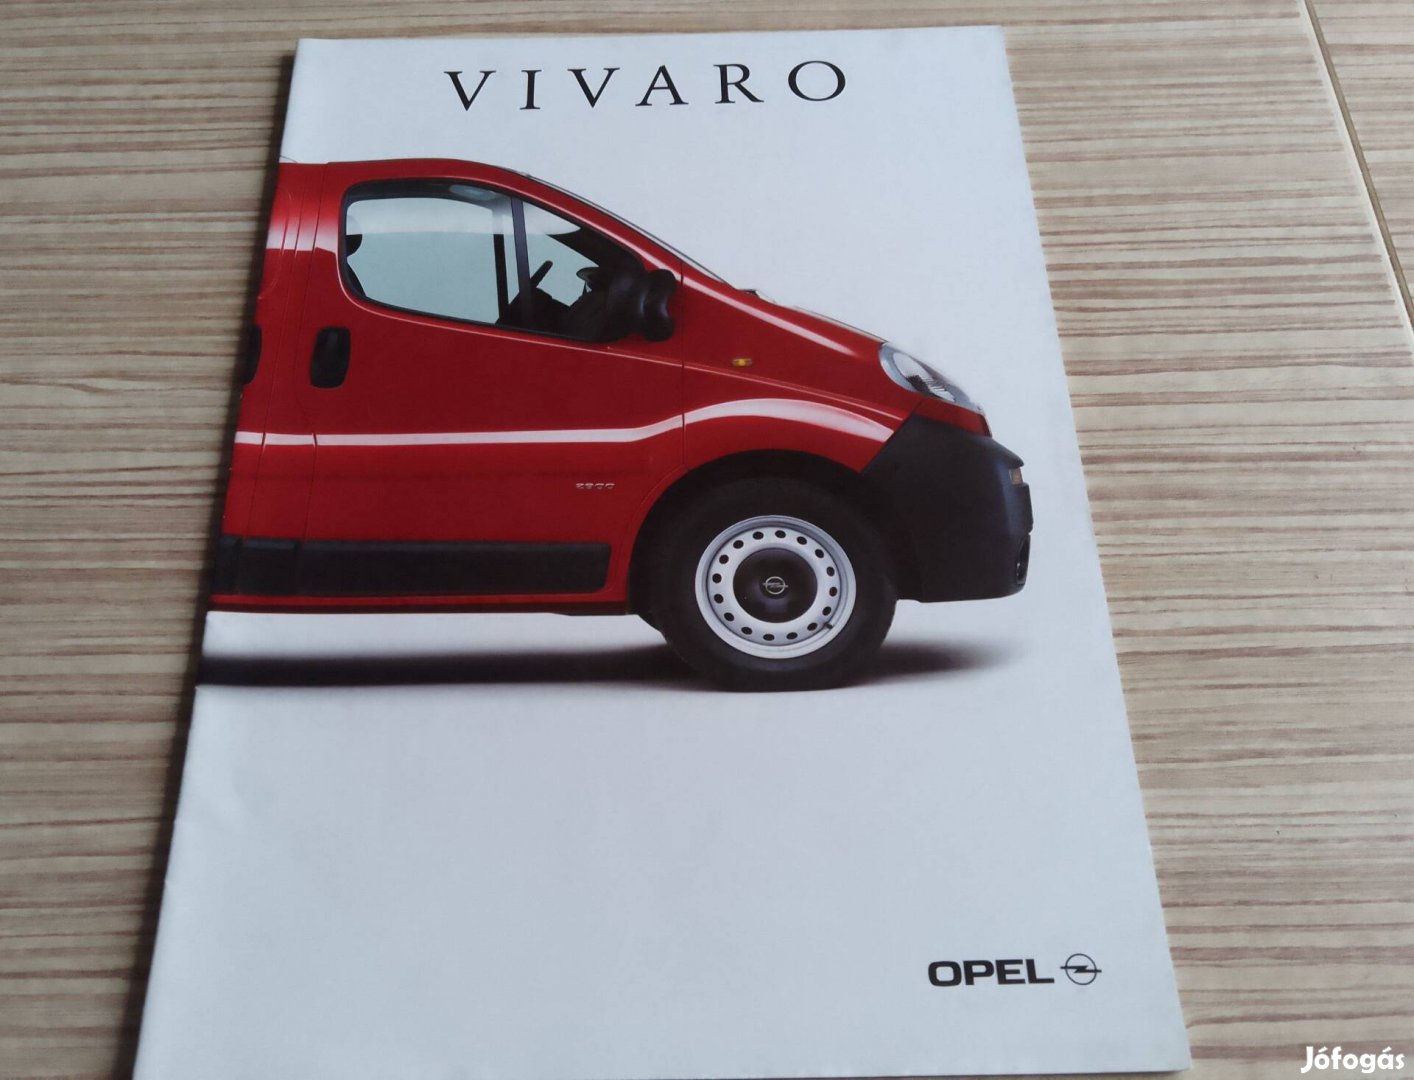 Opel Vivaro (2001) magyar nyelvű prospektus, katalógus.